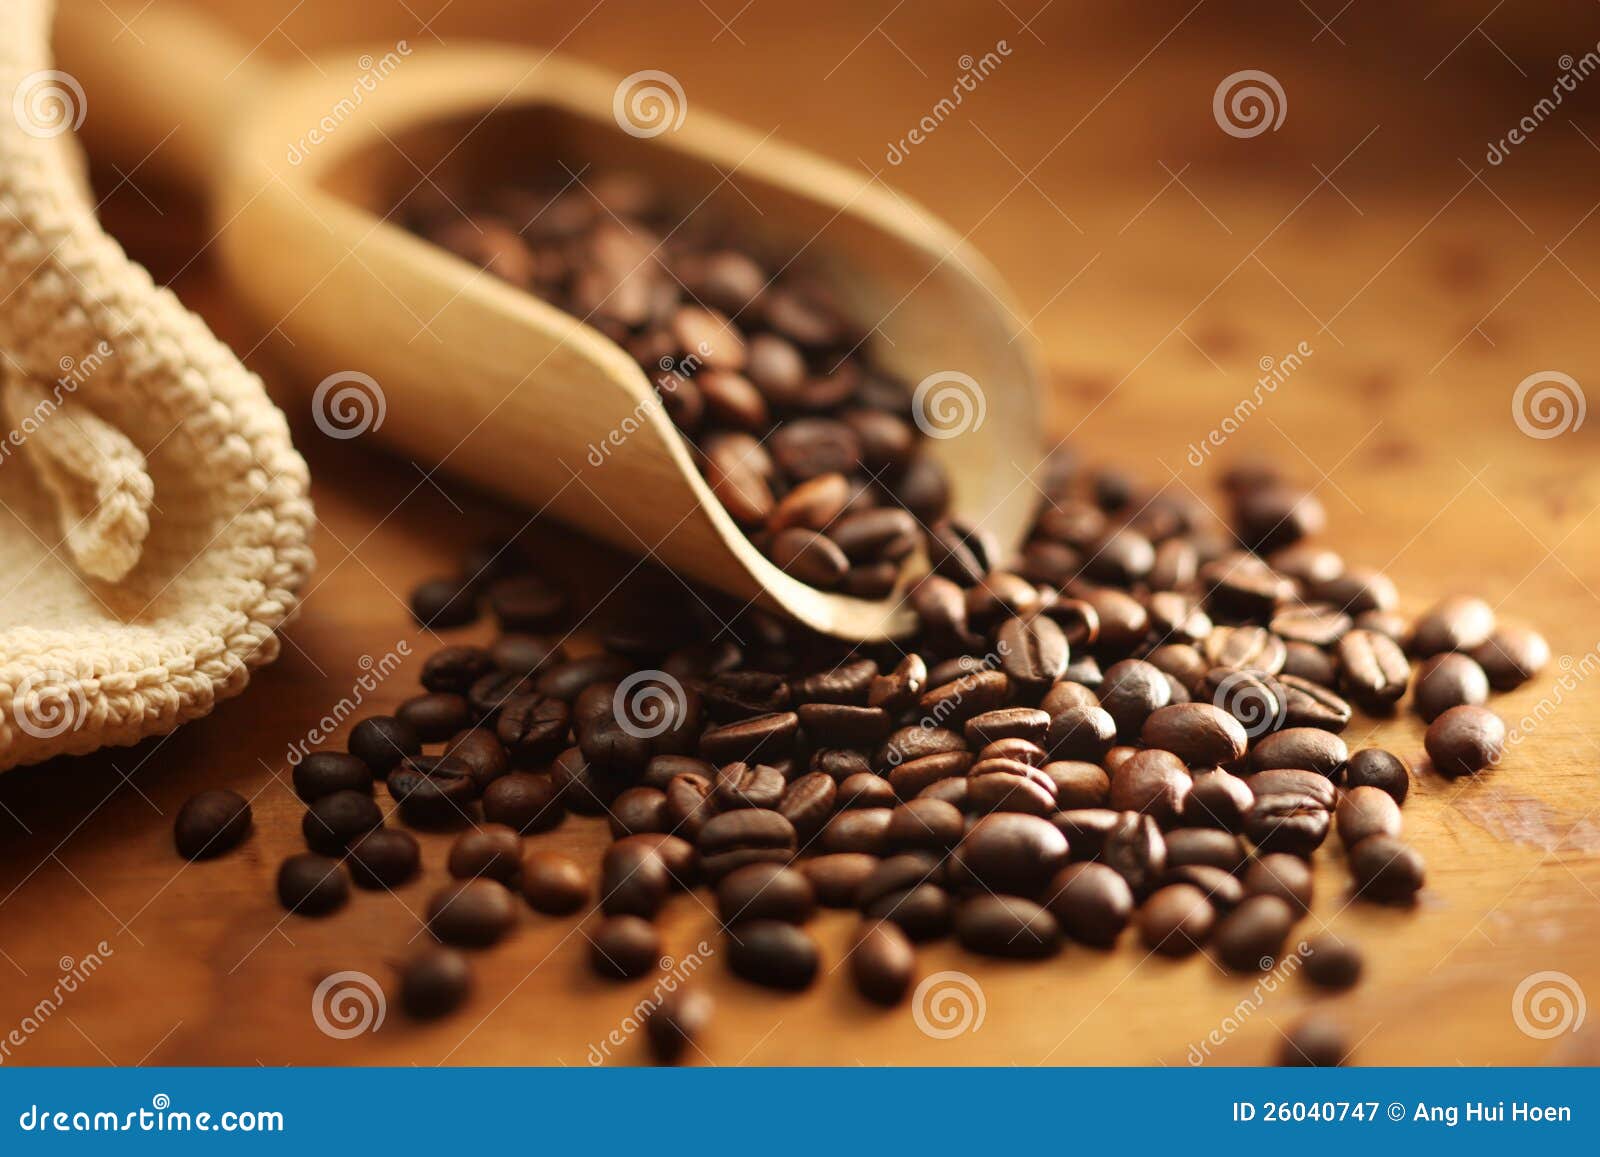 fresh coffee bean